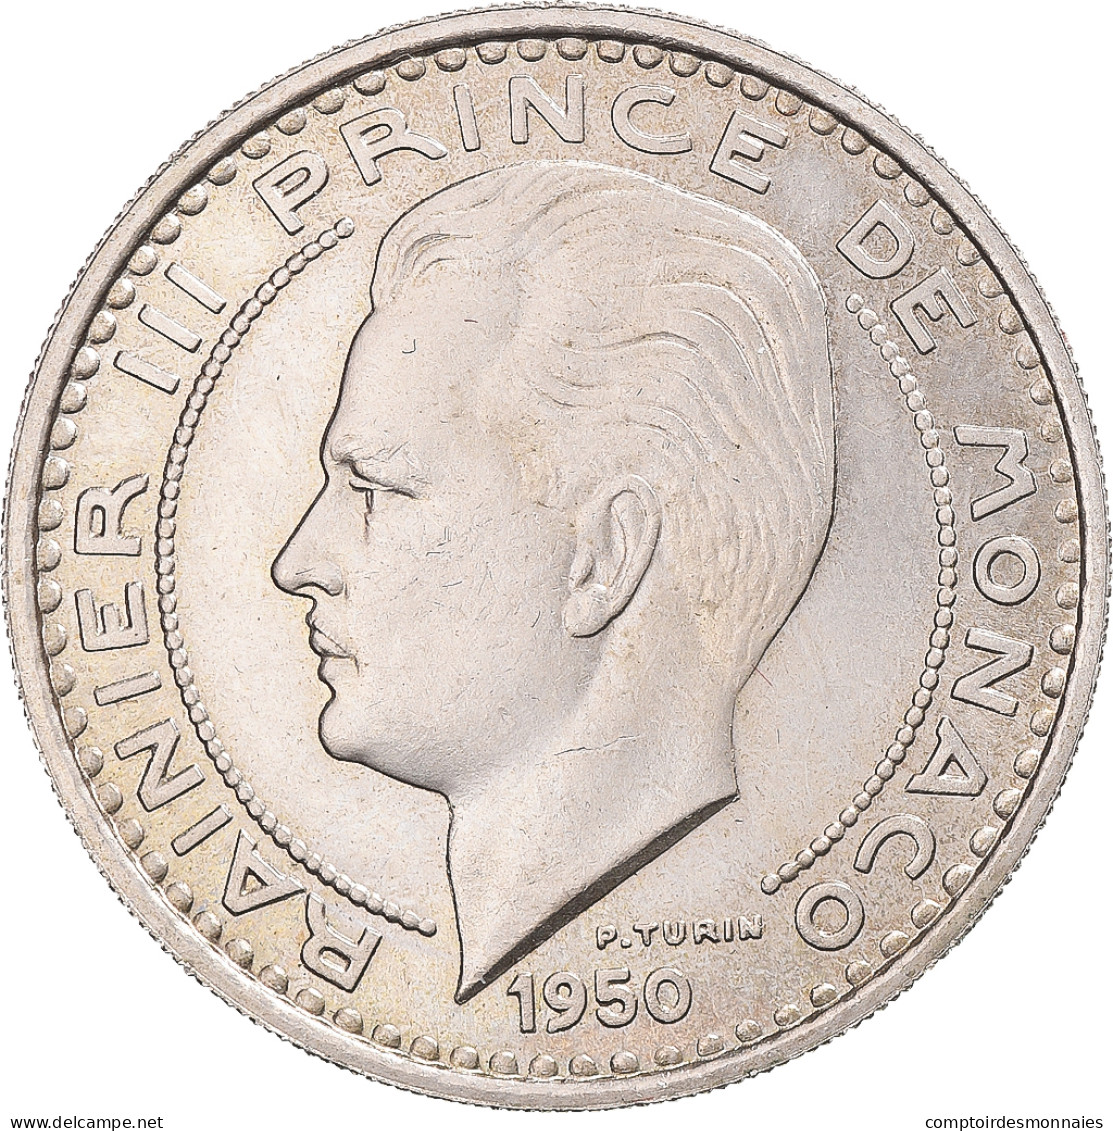 Monnaie, Monaco, Rainier III, 100 Francs, Cent, 1950, Paris, ESSAI, SUP - 1949-1956 Anciens Francs